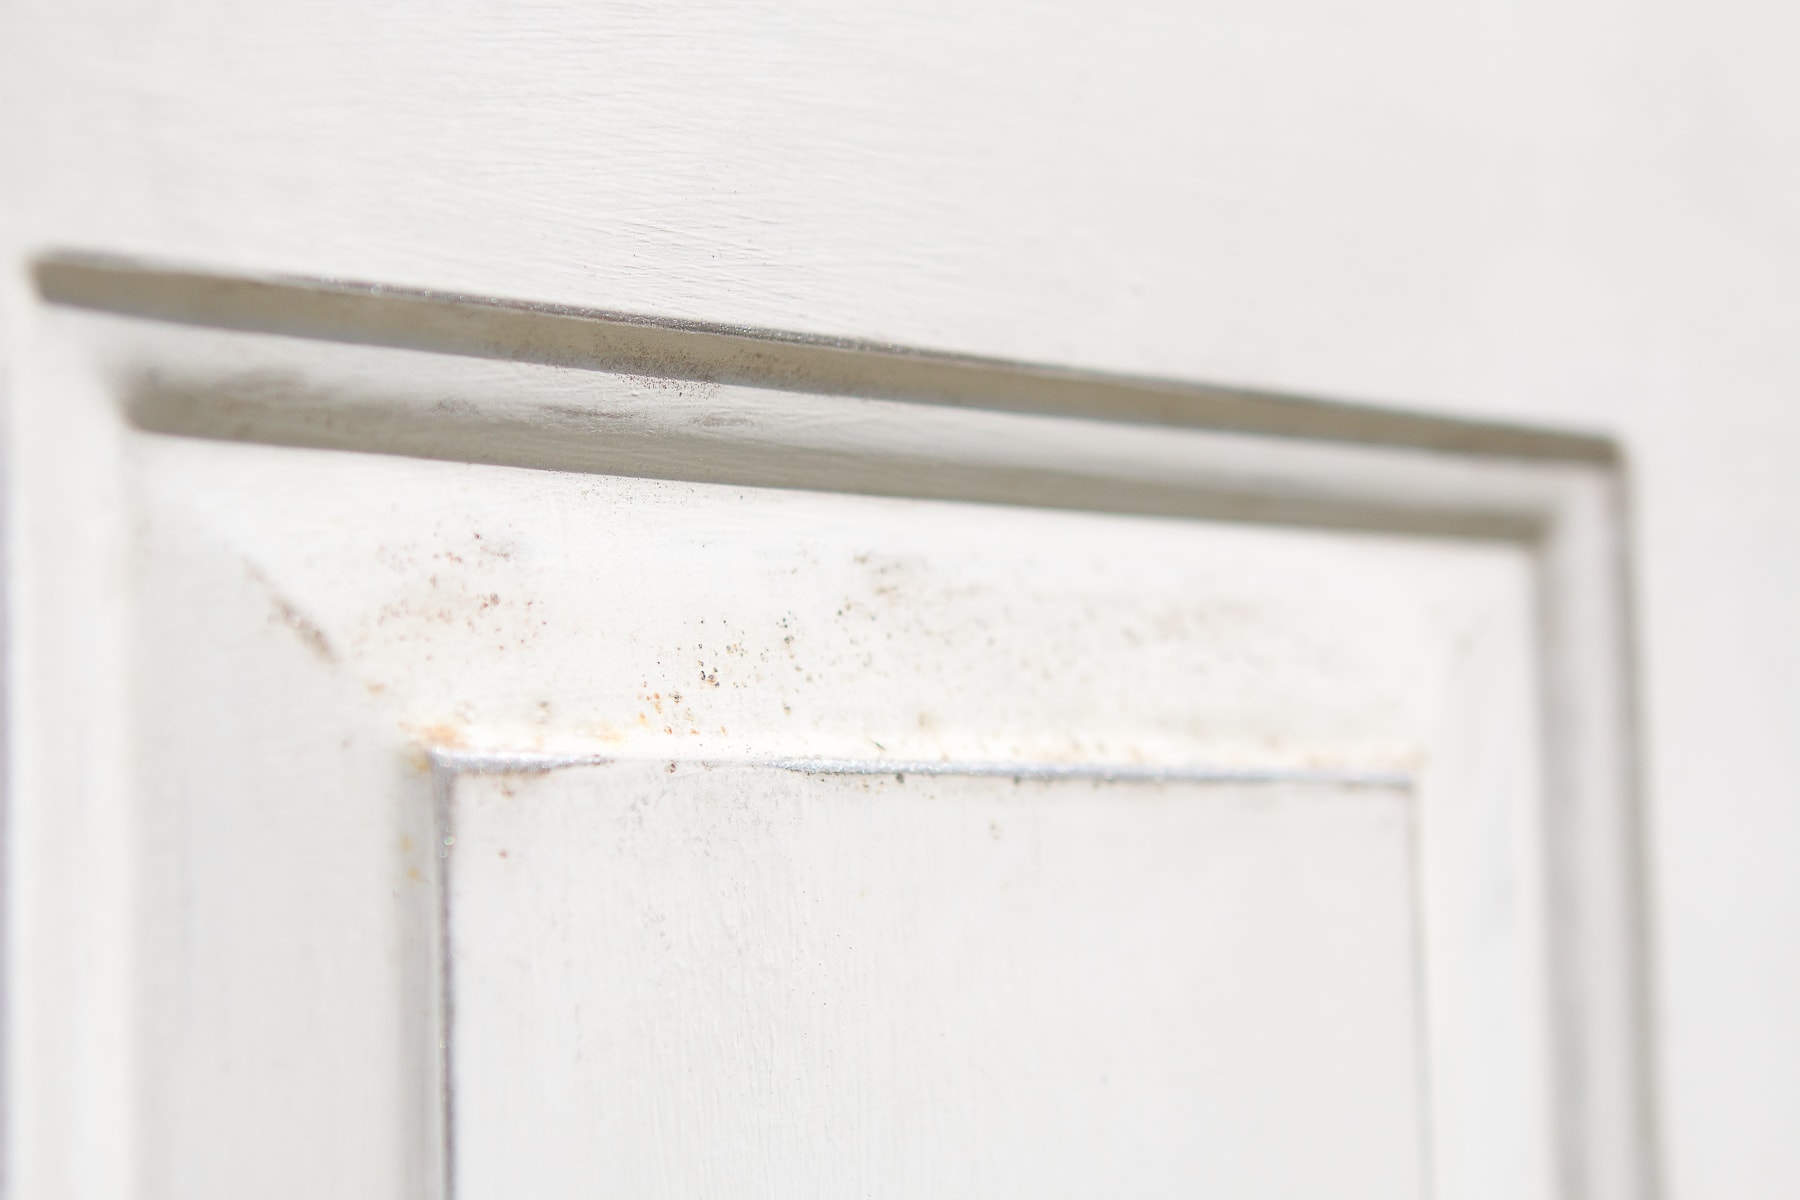 Getting rid of rust on an exterior metal door